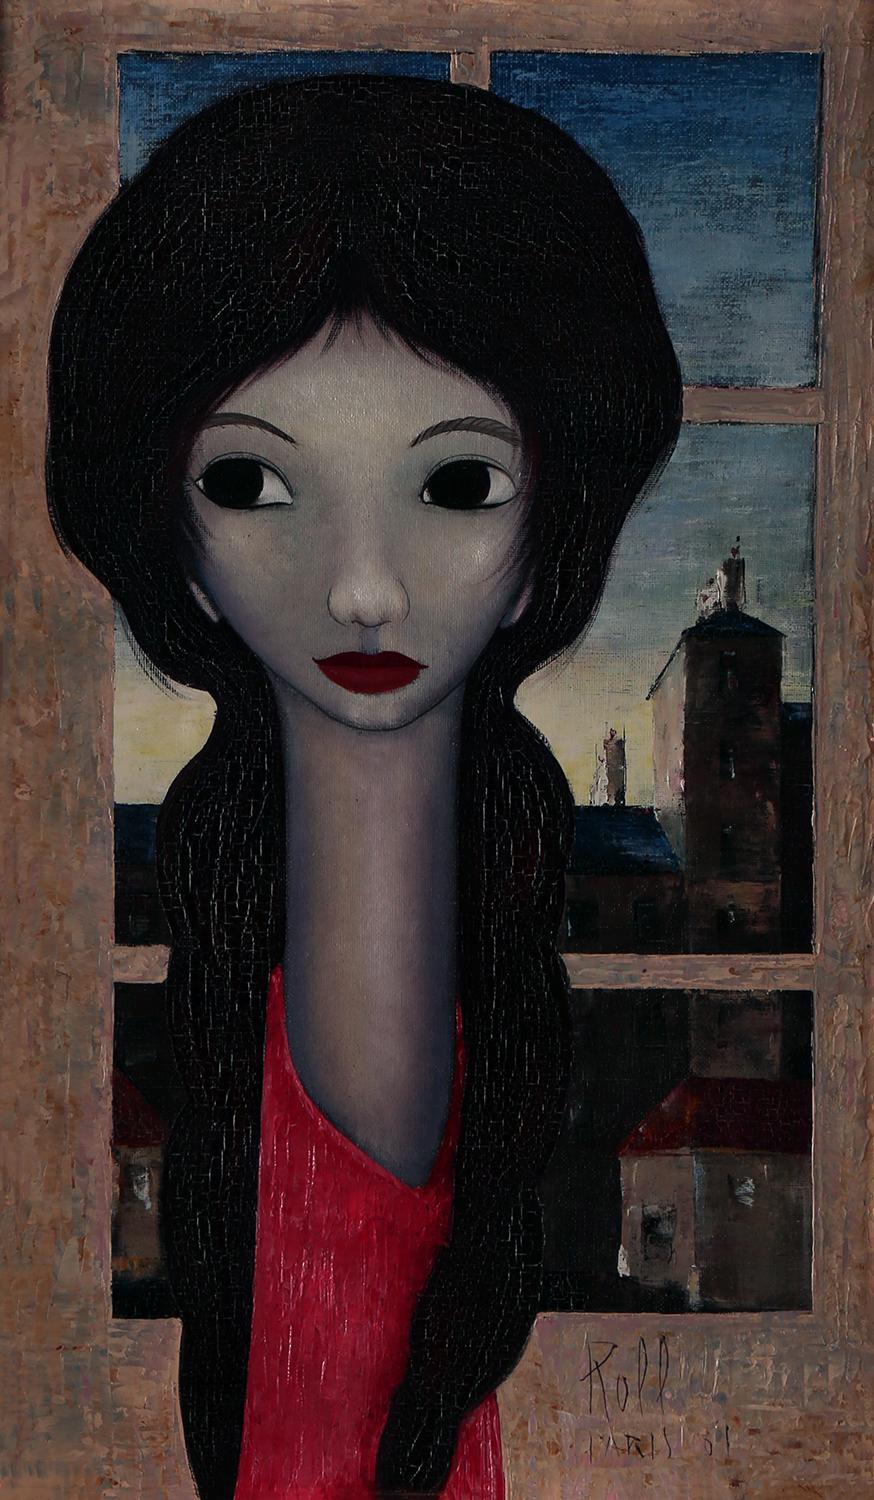 Big Eye Girl In Paris - Painting by Roff of Paris